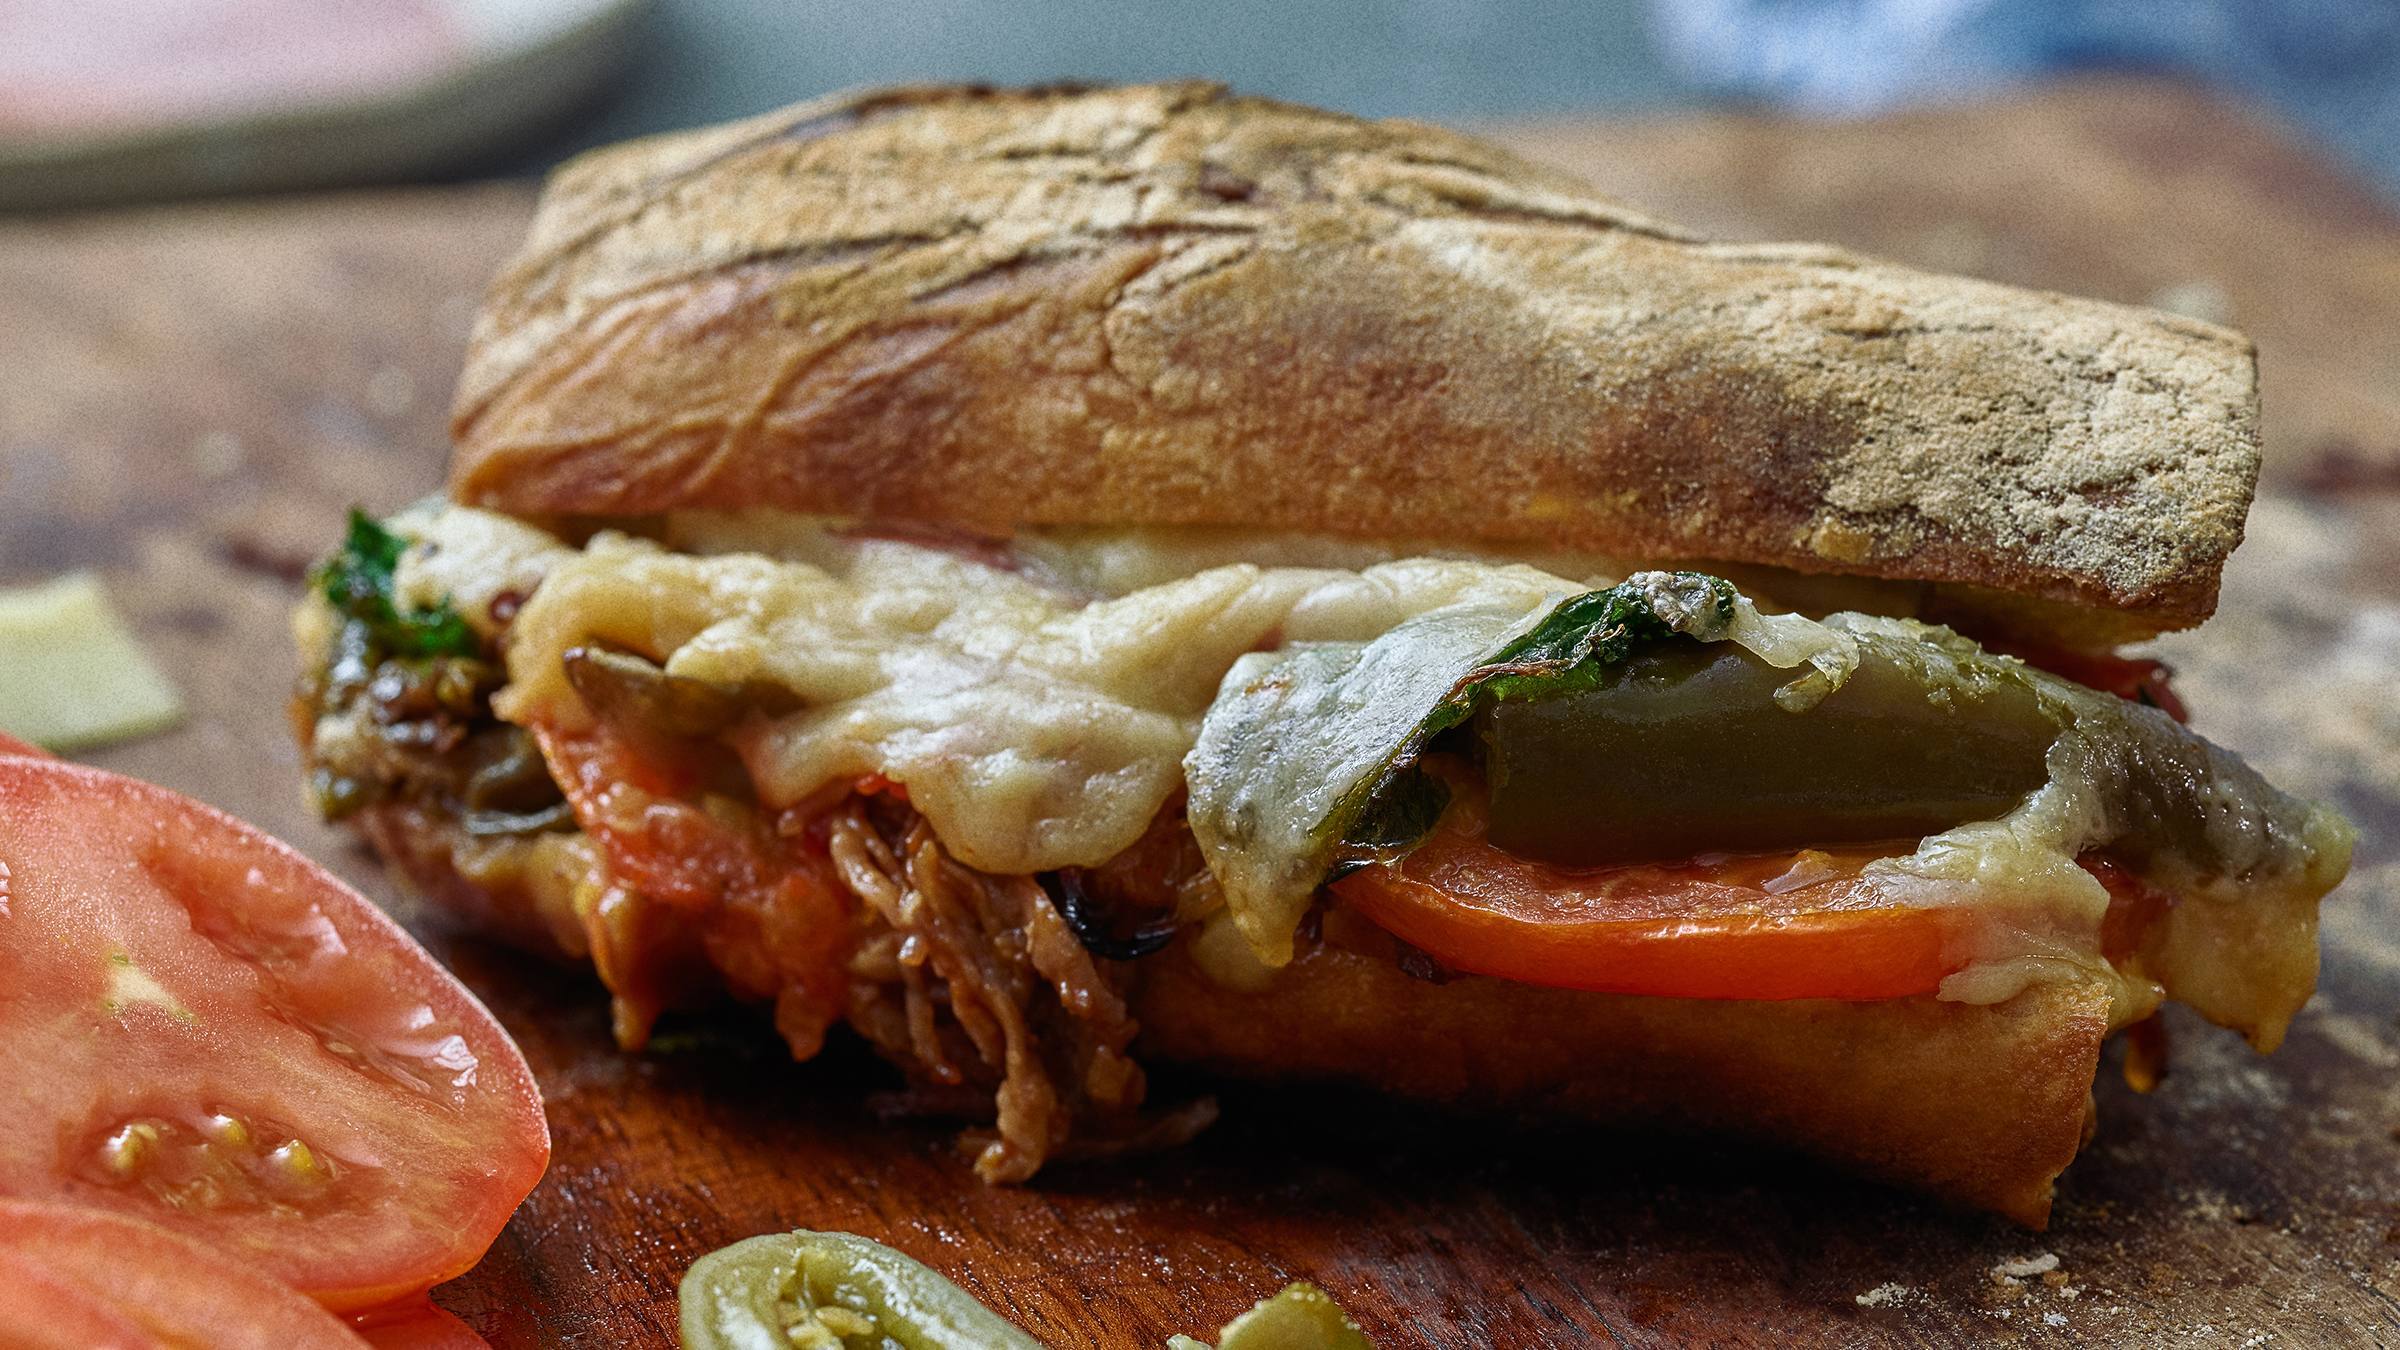 Sandwich "El Cubano"